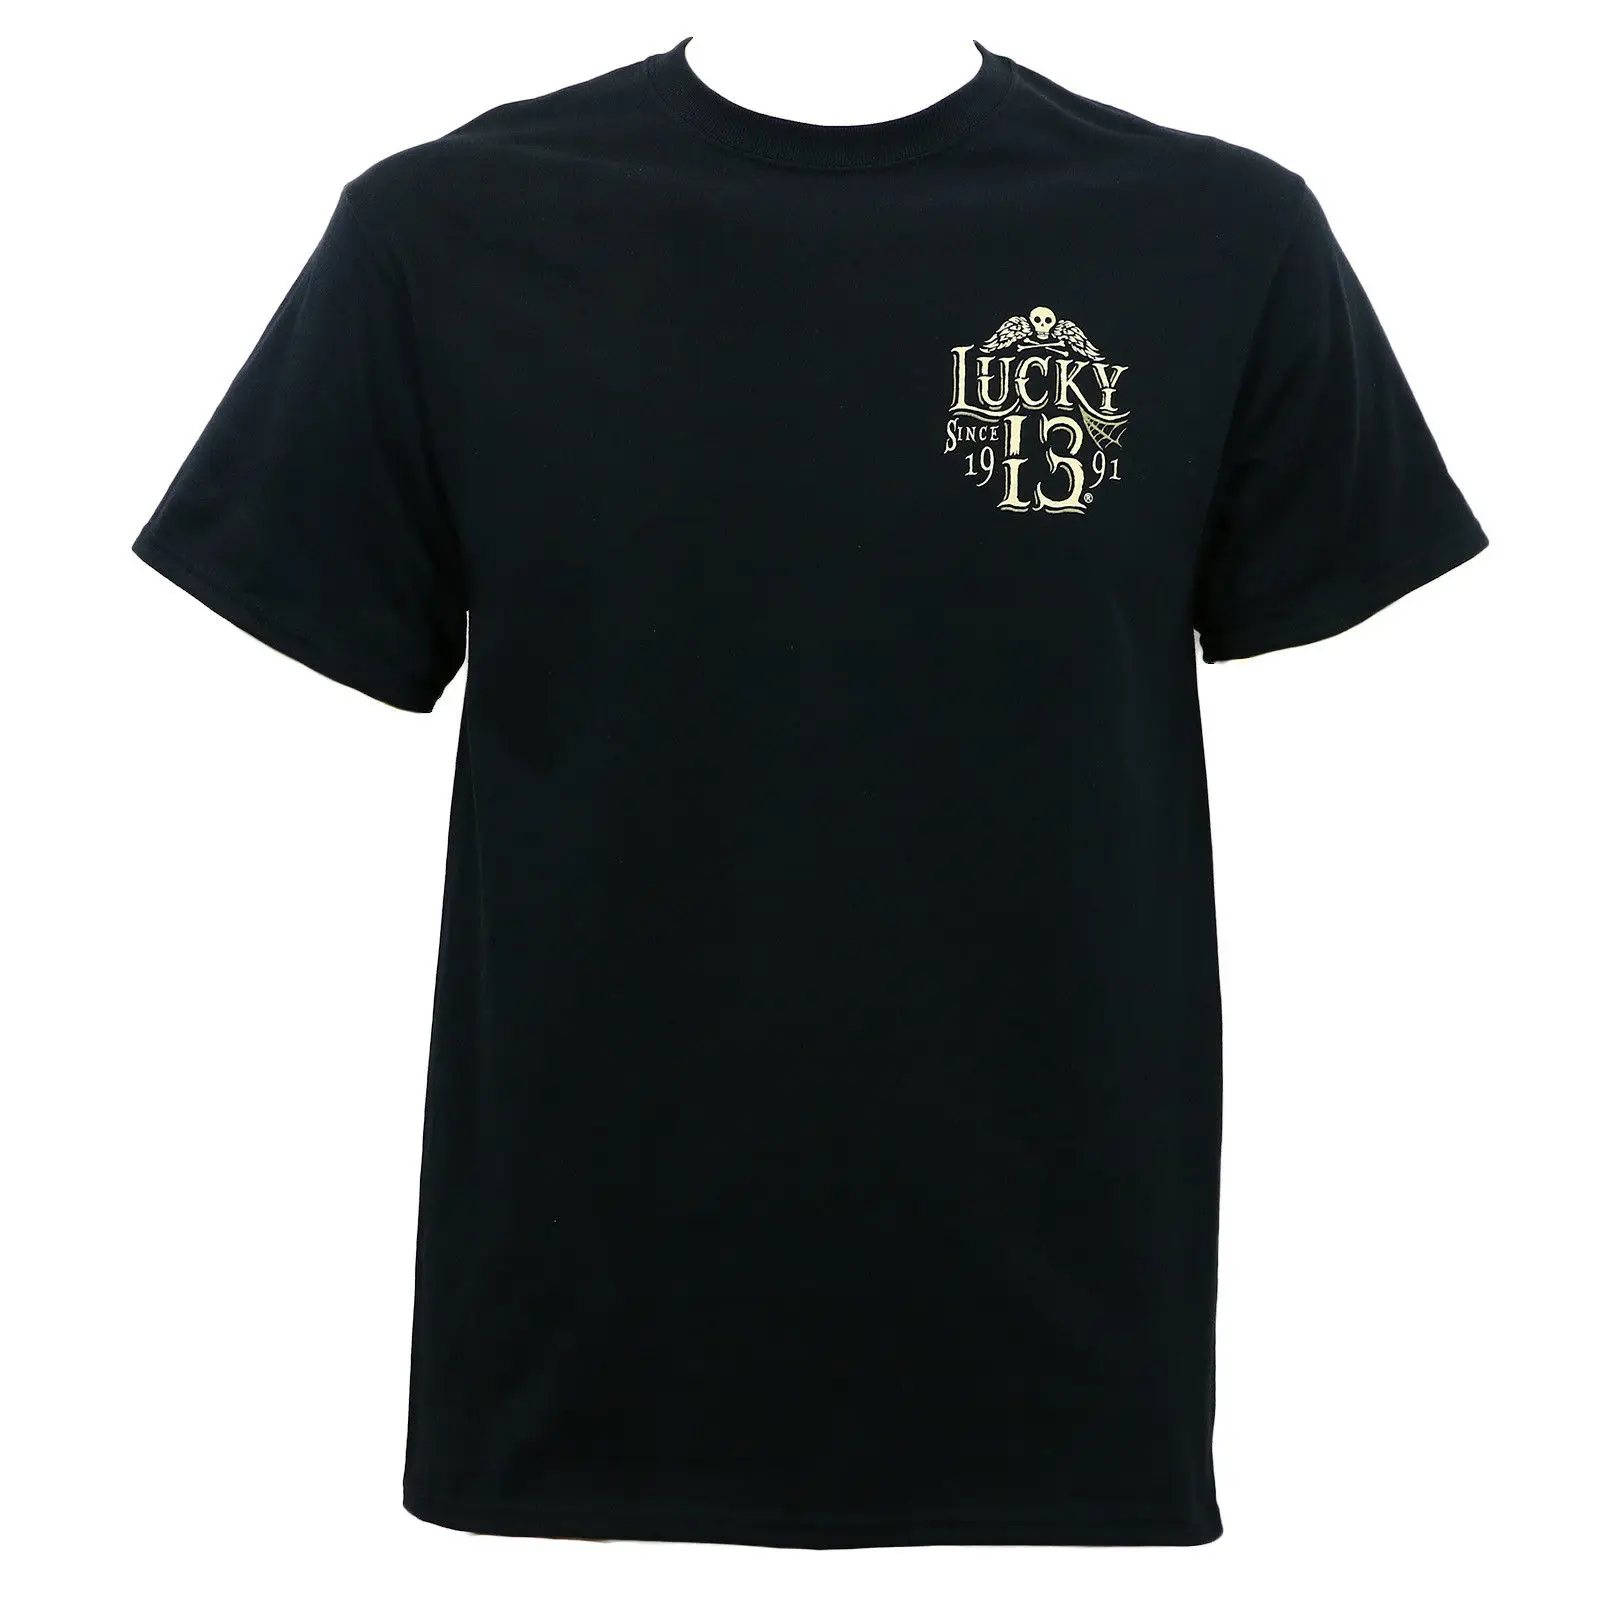 Аутентичная футболка LUCKY 13 Dead Skull Dia De Lo, размеры s, m, uertos, размеры s, l, xl, 3XL, новинка, модные футболки унисекс, топ, футболка